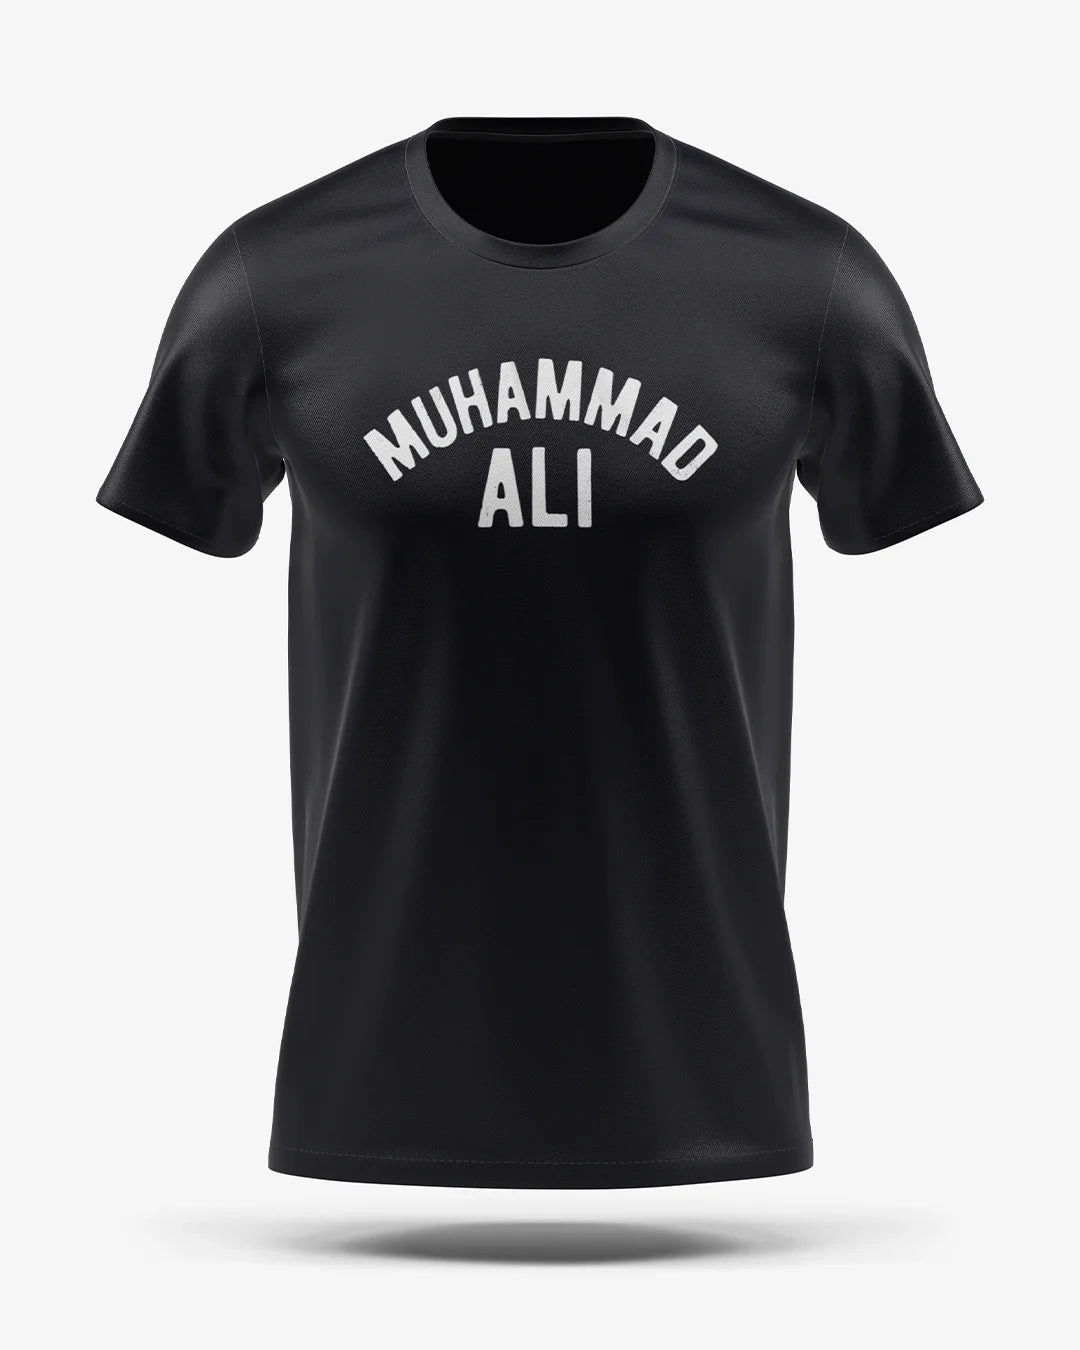 Camiseta Esporte Dry Fit - Muhammad Ali